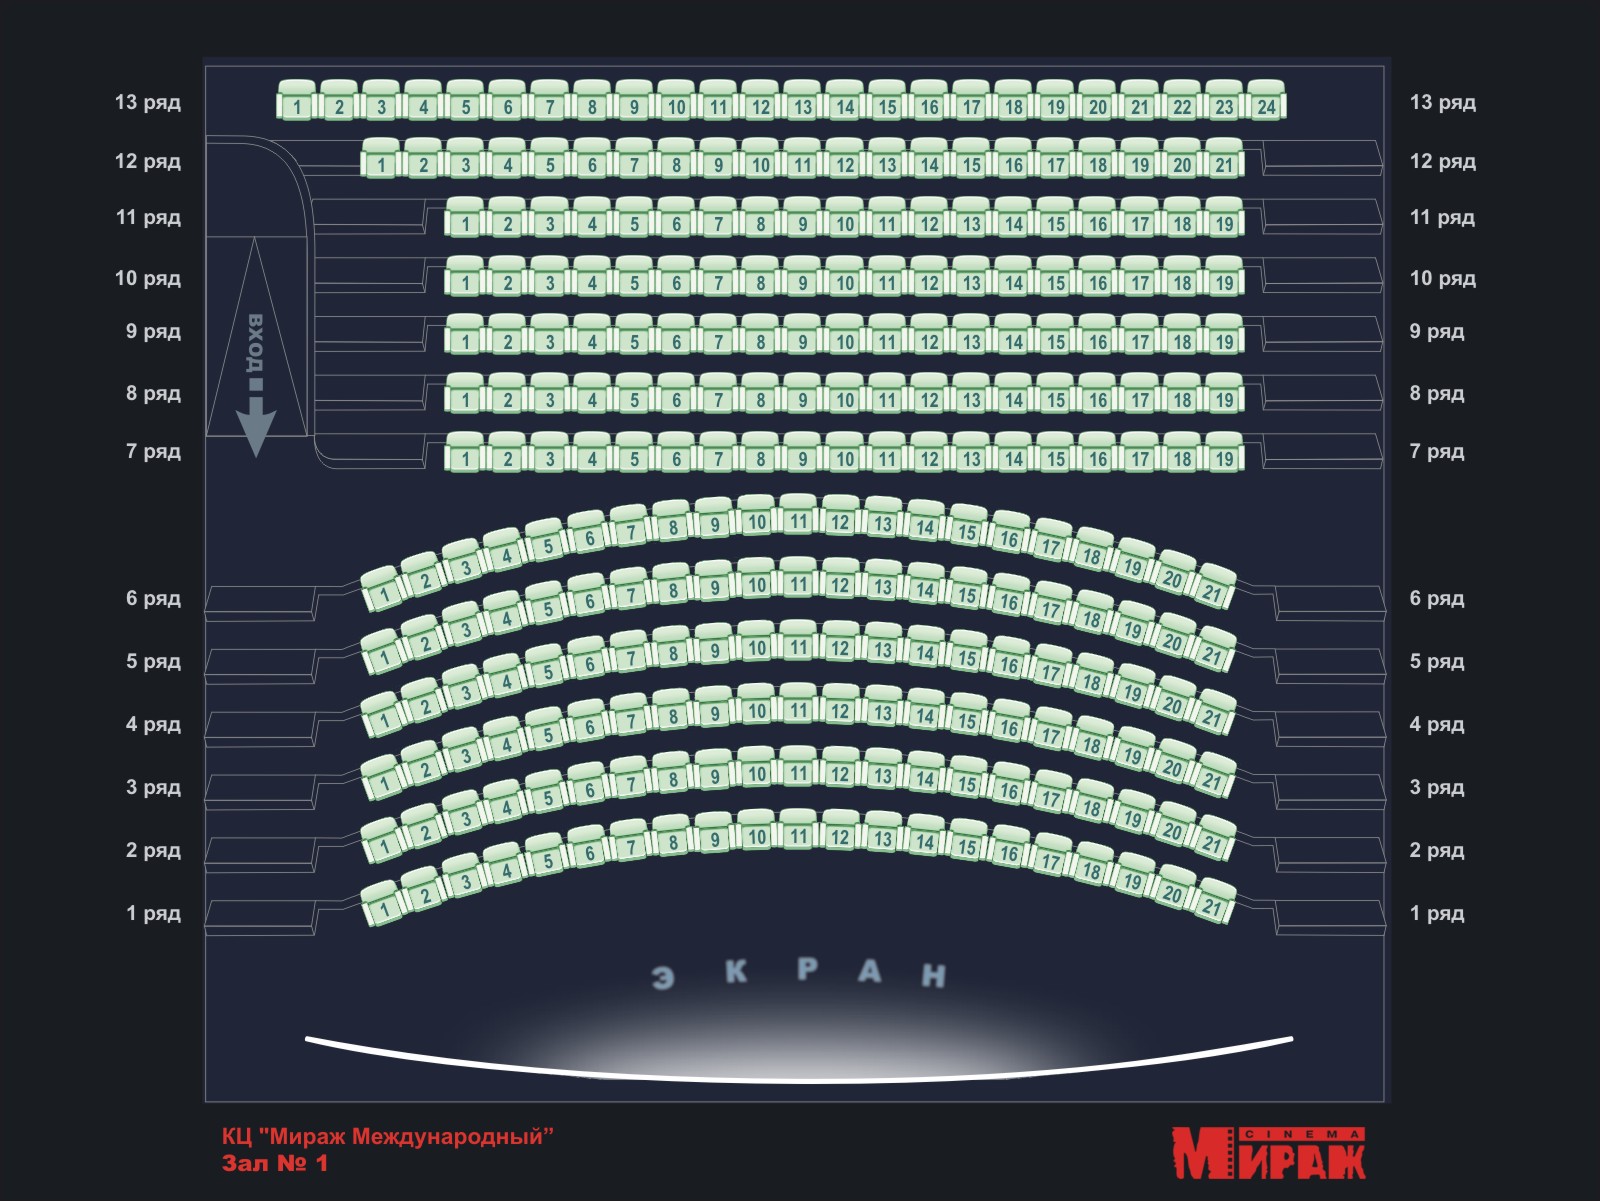 Кинотеатр москвы цены на билеты расписание